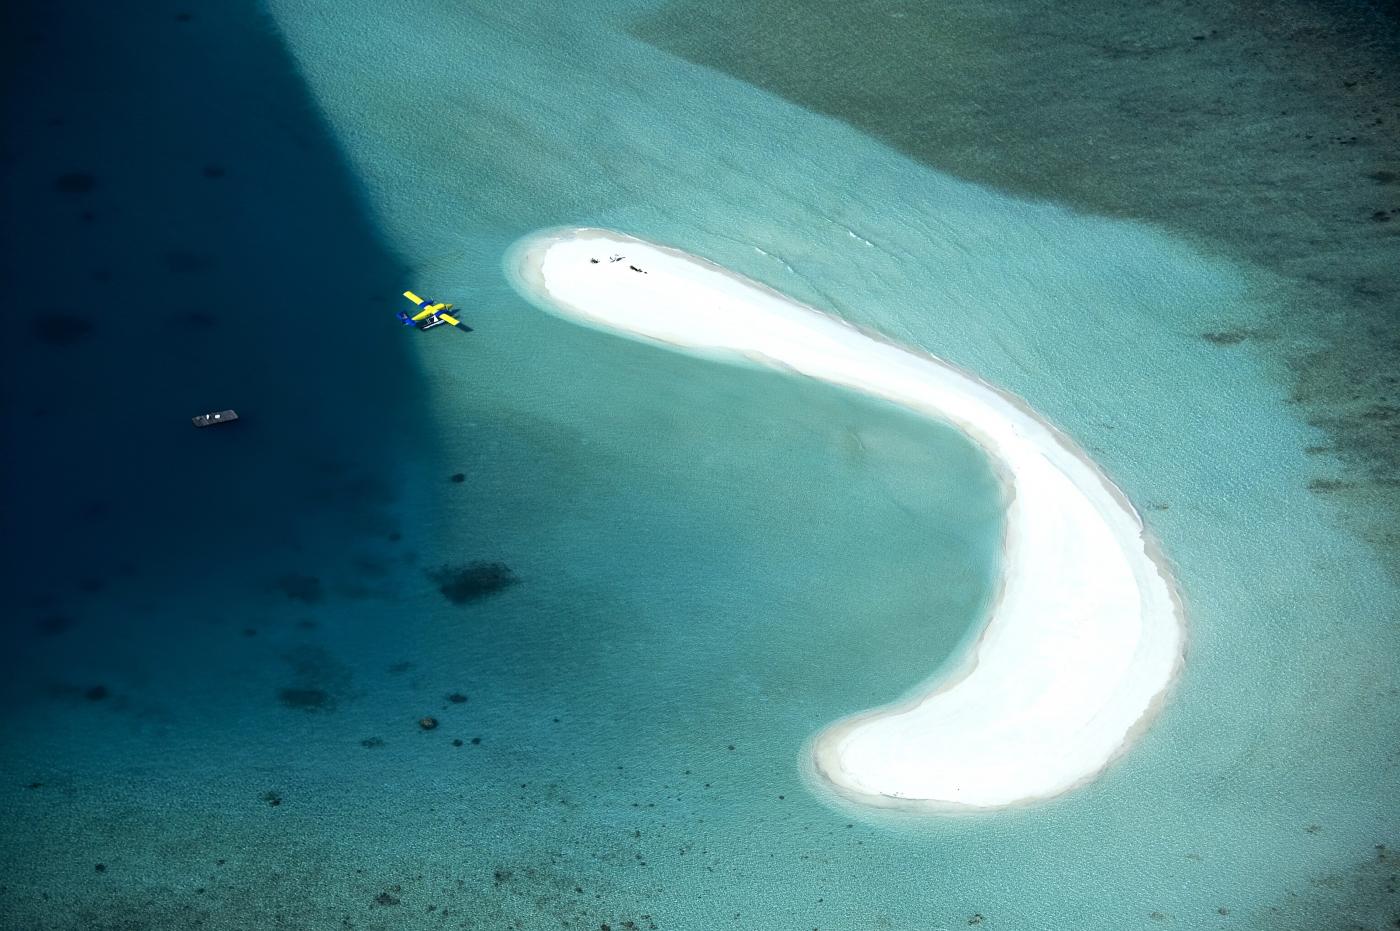 voyage-de-legende-maldives-abrite-plus-de-1000-iles-coralliennes